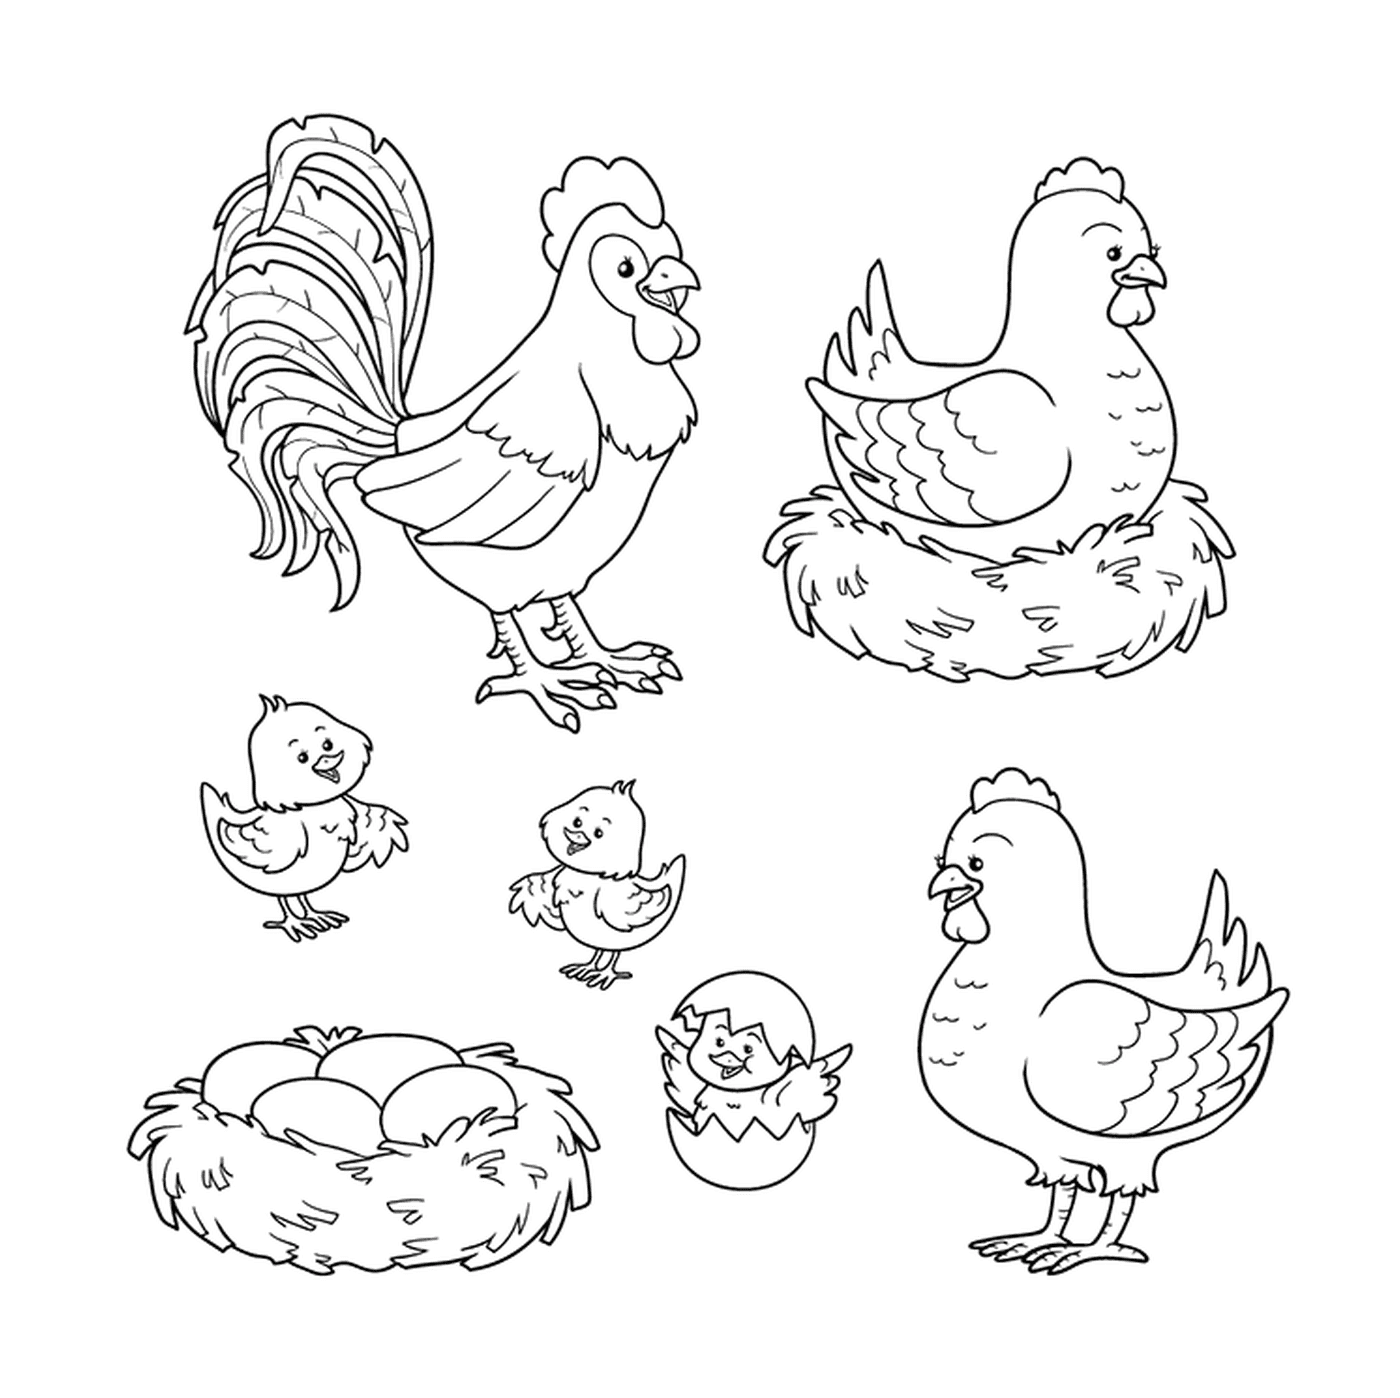  鸡鸡,鸡鸡,鸡鸡,鸡鸡在一起 